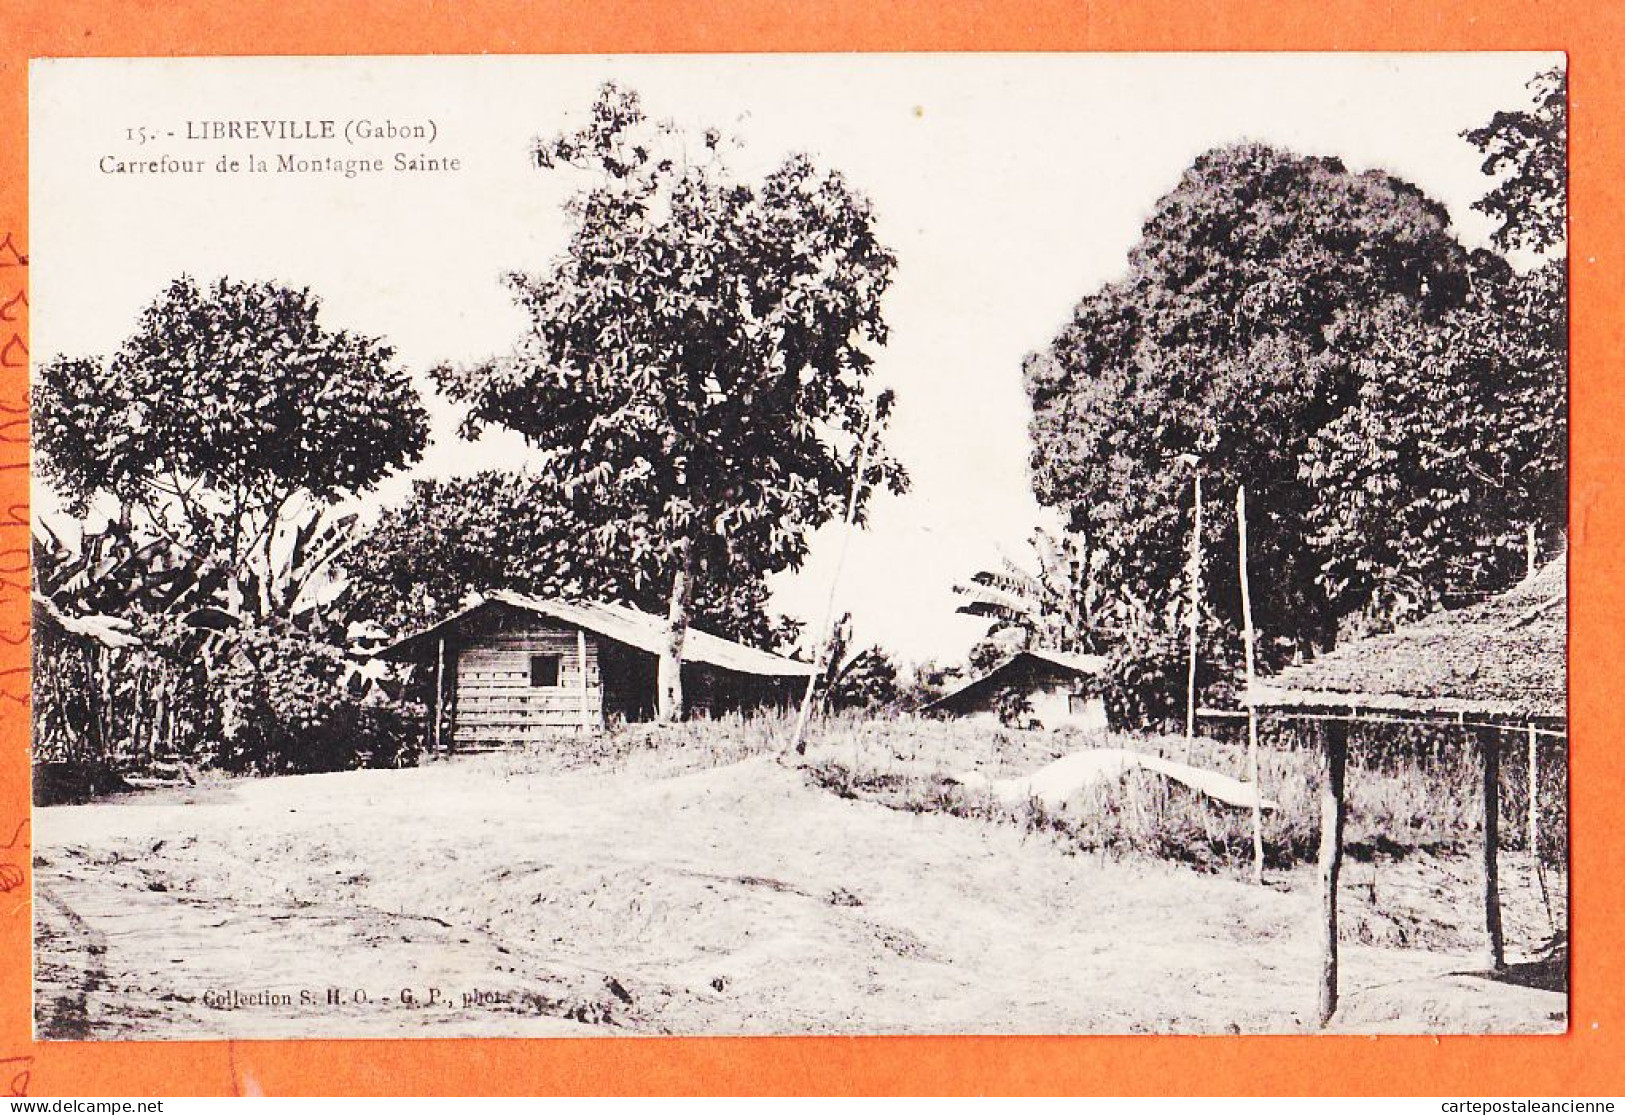 32573 / ♥️ (•◡•) PORT-GENTIL Gabon ◉ Société HAUT-OGOOUE Pavillon De La Direction 1910s ◉ Collection S.H.O Photo G.P 142 - Gabon